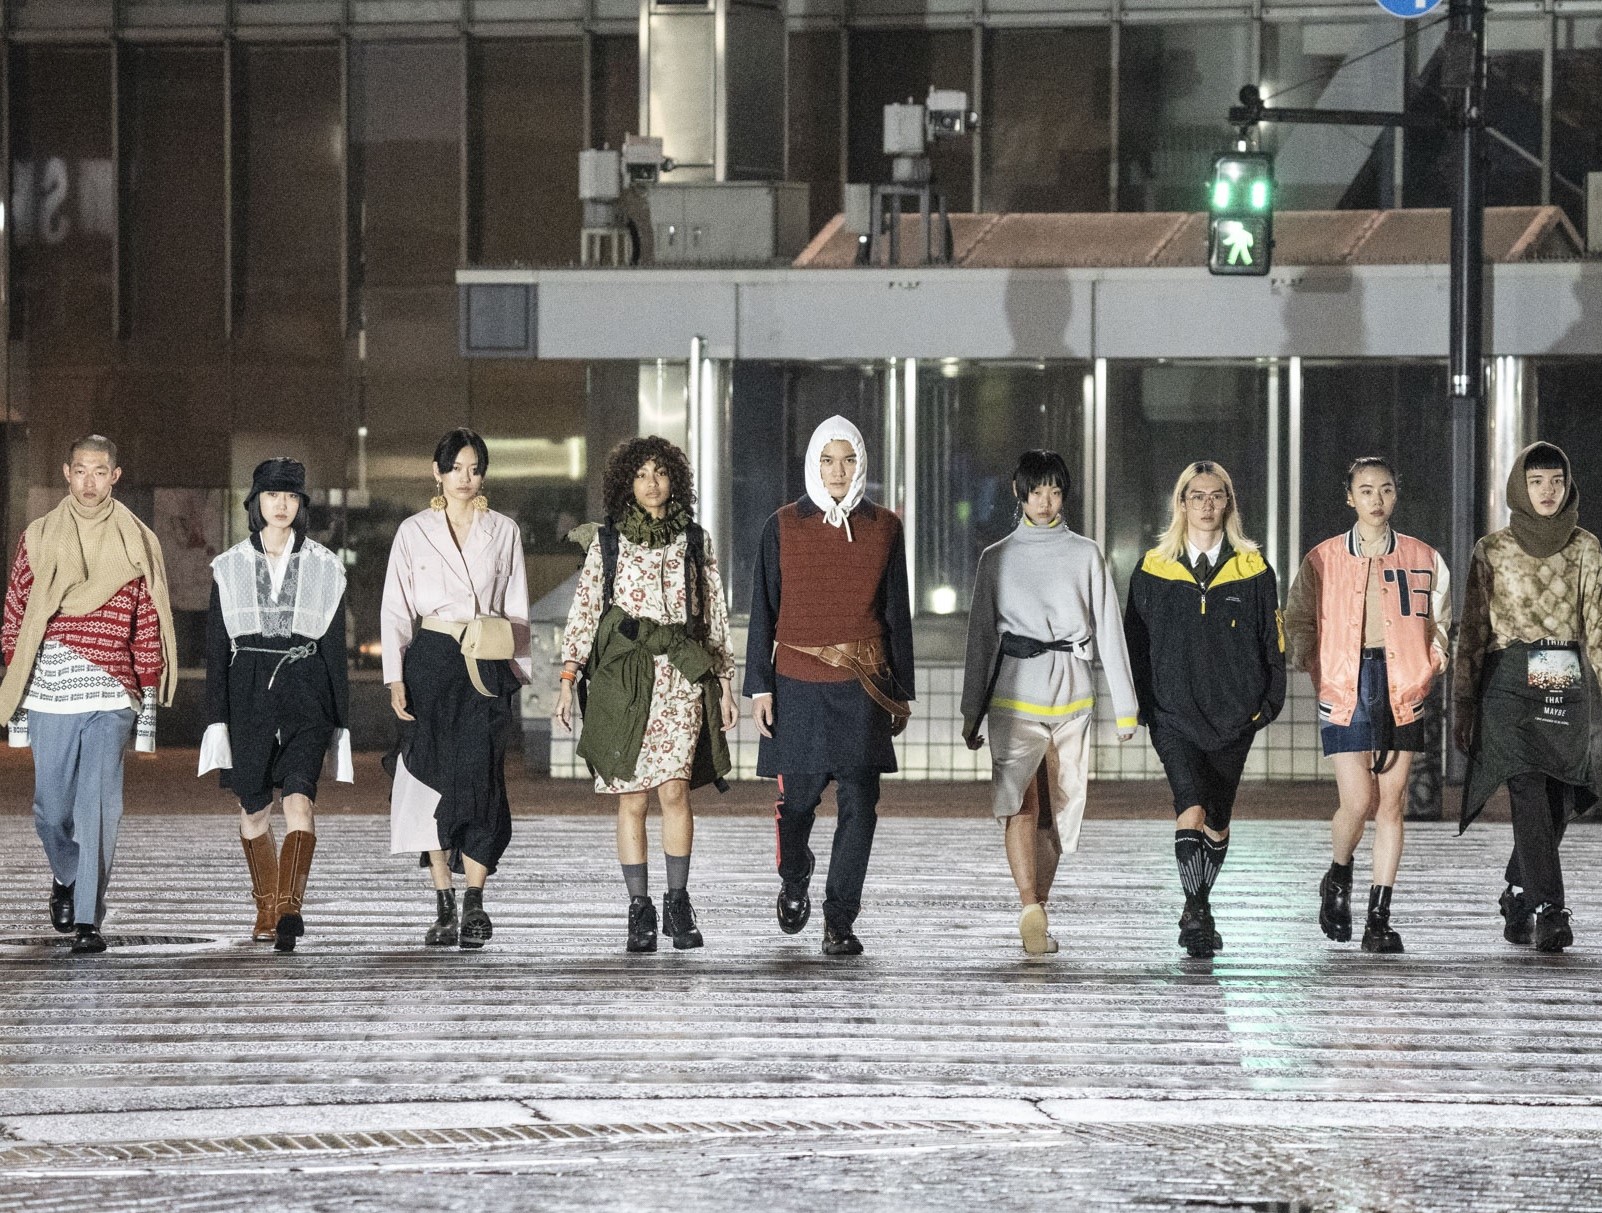 渋谷 原宿 フィジタル でファッションを楽しむ一週間 Fashion Show Of Shibuya Family Sale マーケットイベント開催 一般社団法人渋谷未来デザイン